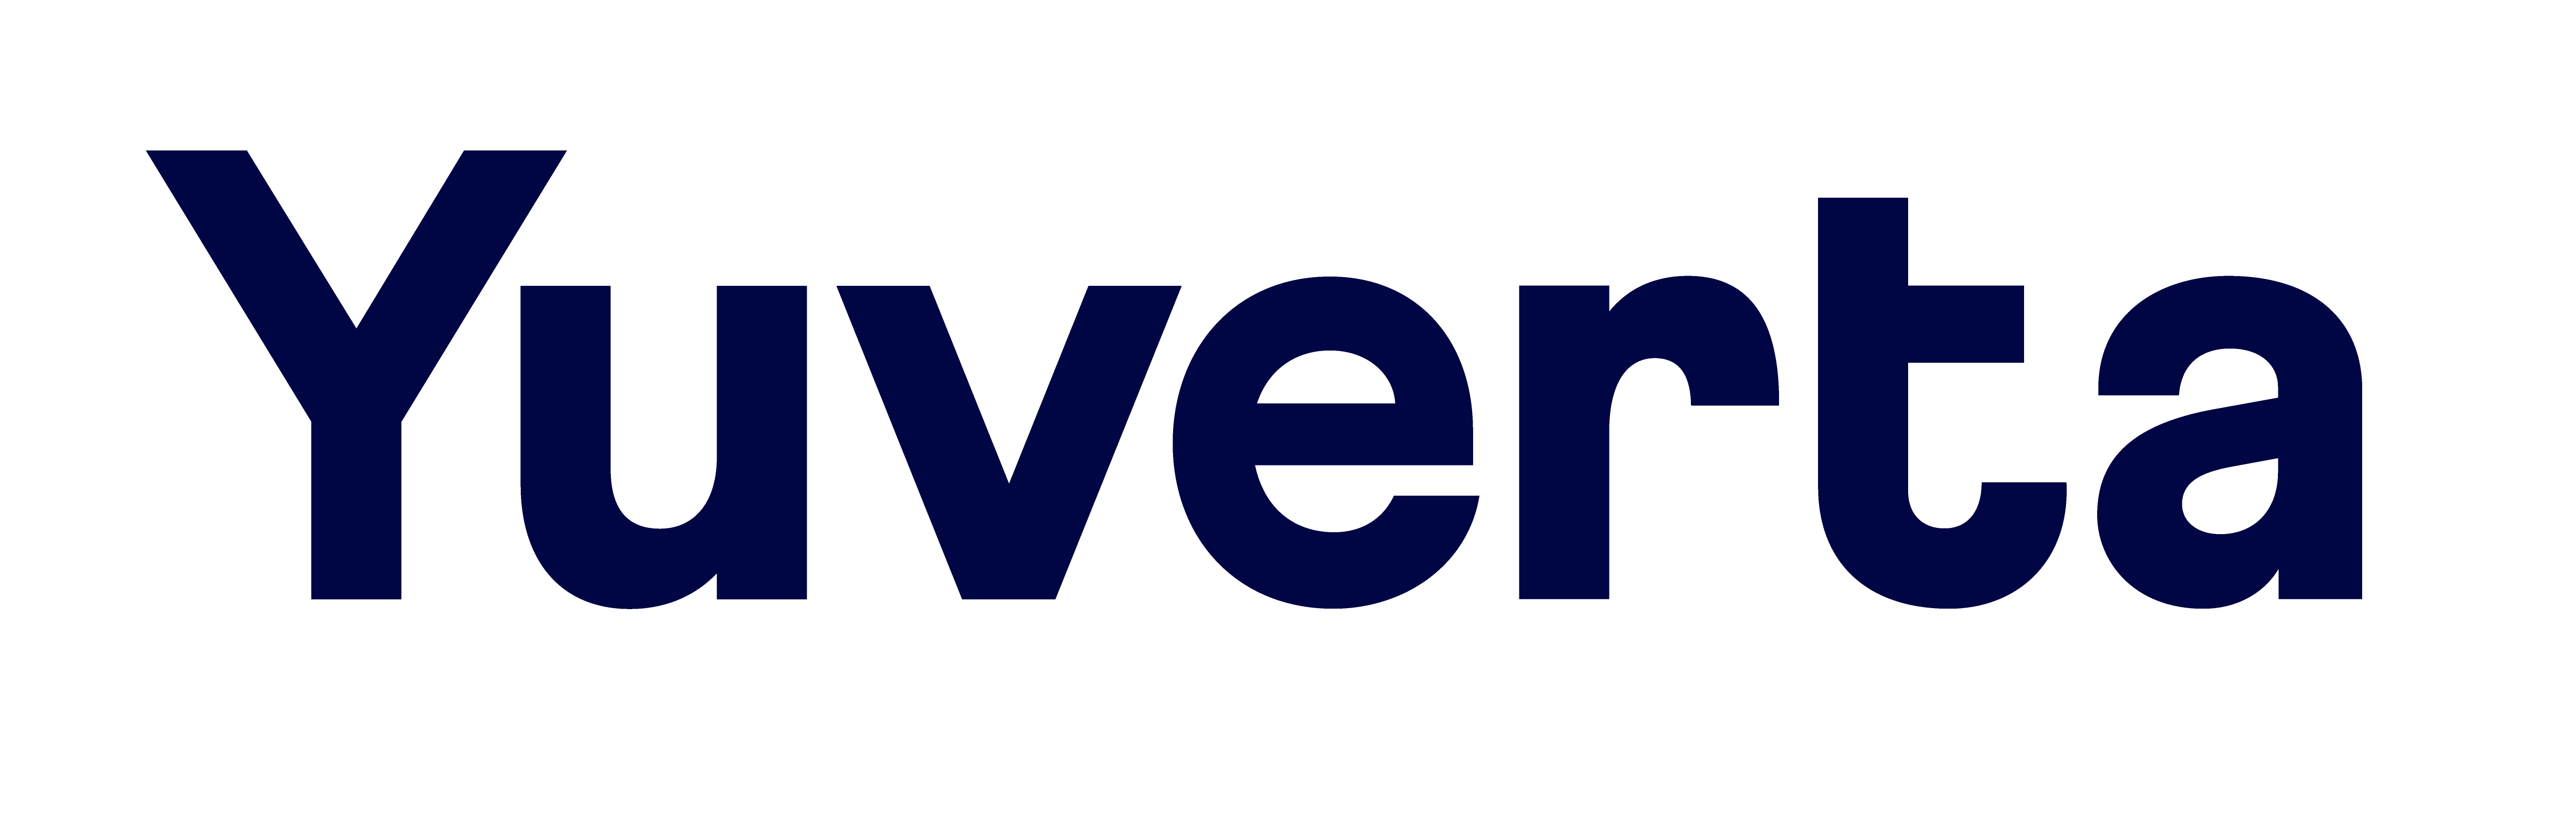 Yuverta - Logo - Donker Blauw - RGB